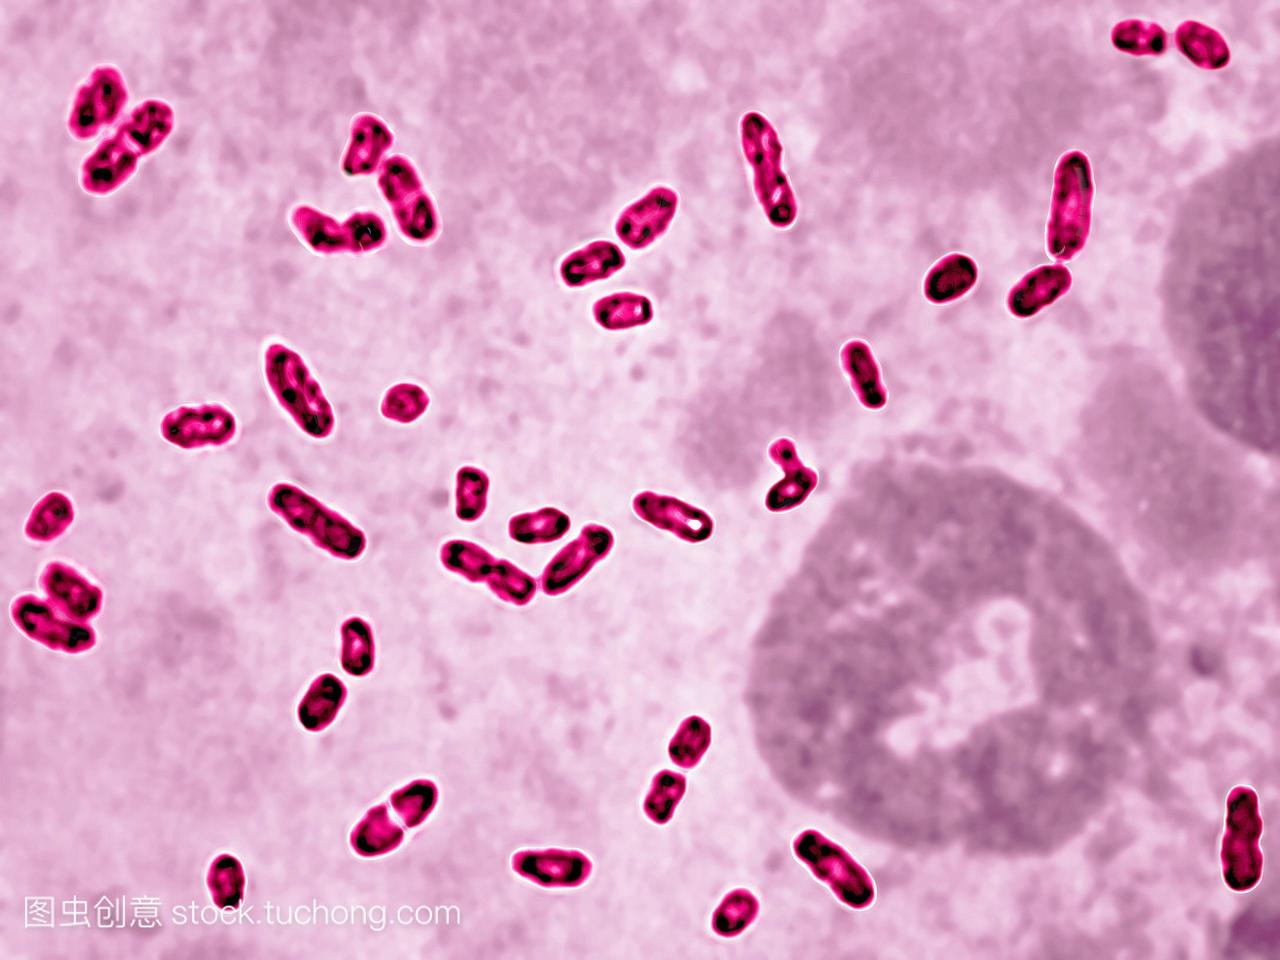 鼠疫杆菌是一种对黑死病负责的细菌。光学显微